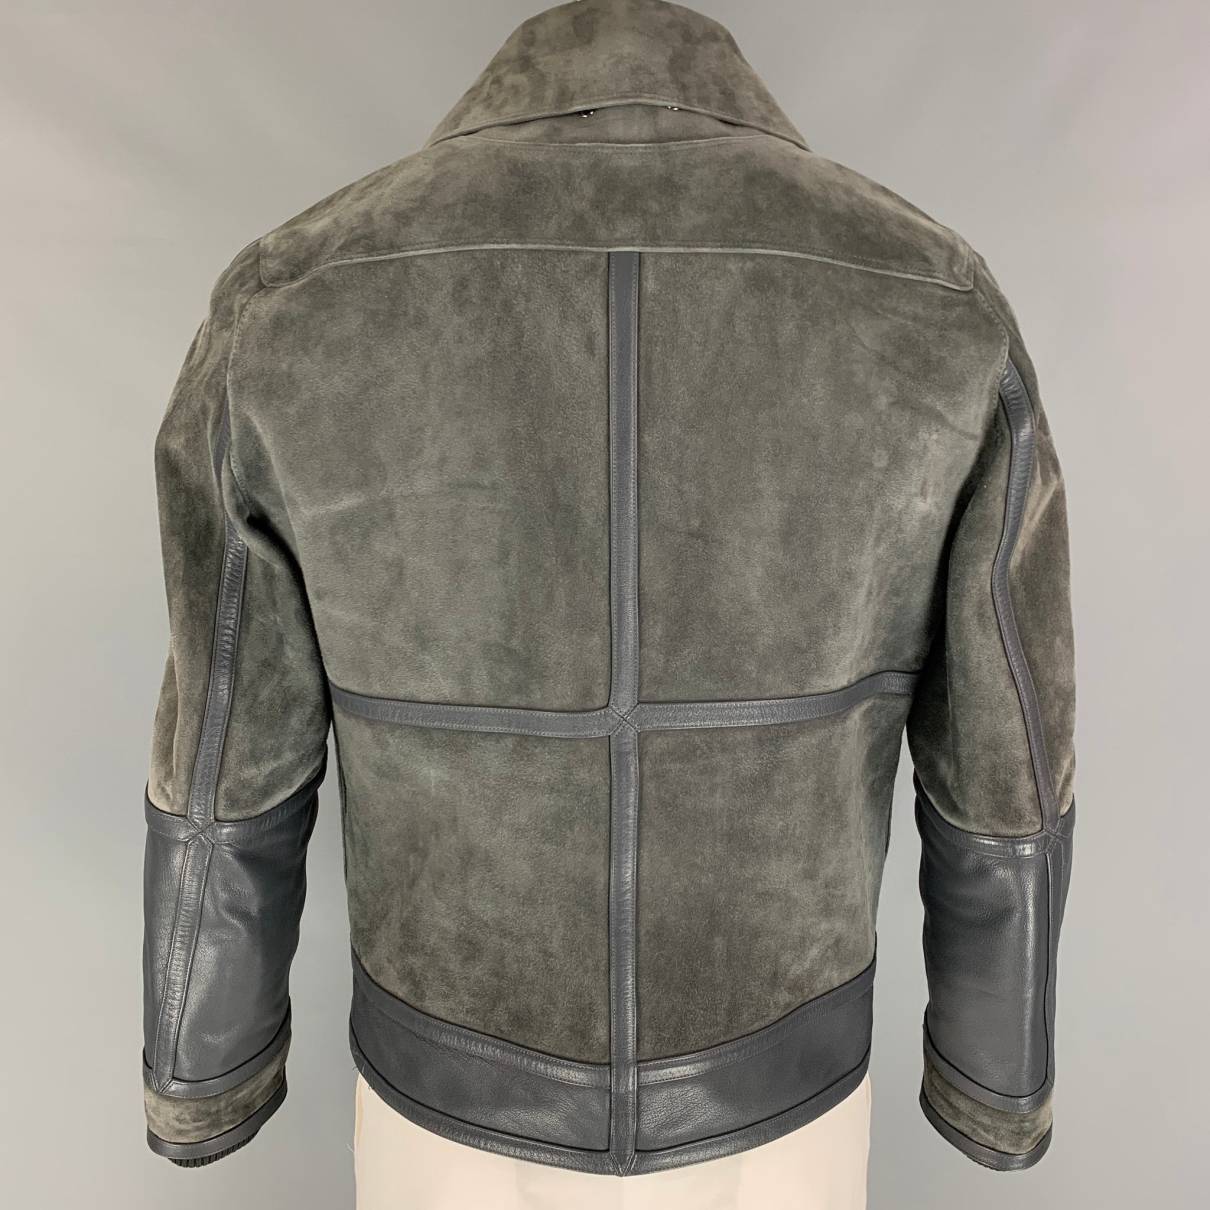 vuitton leather jacket men